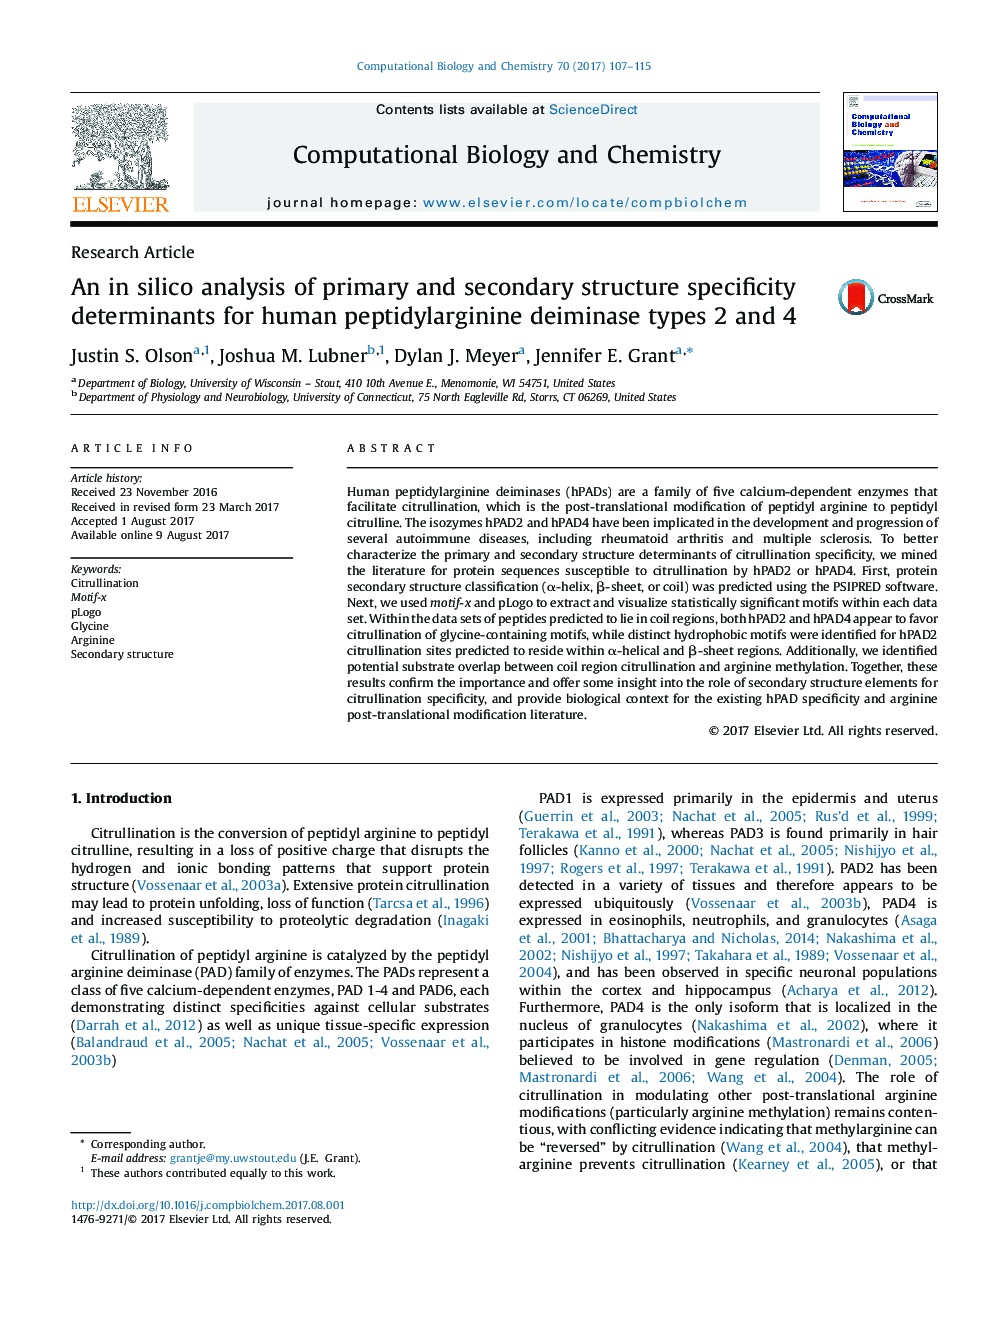 تحقیق مقاله ای در تحلیل سیلیکات تعیین کننده ویژگی های ساختاری اولیه و ثانویه برای انواع پپتیدیلارژینین دییمیناز انسان 2 و 4 